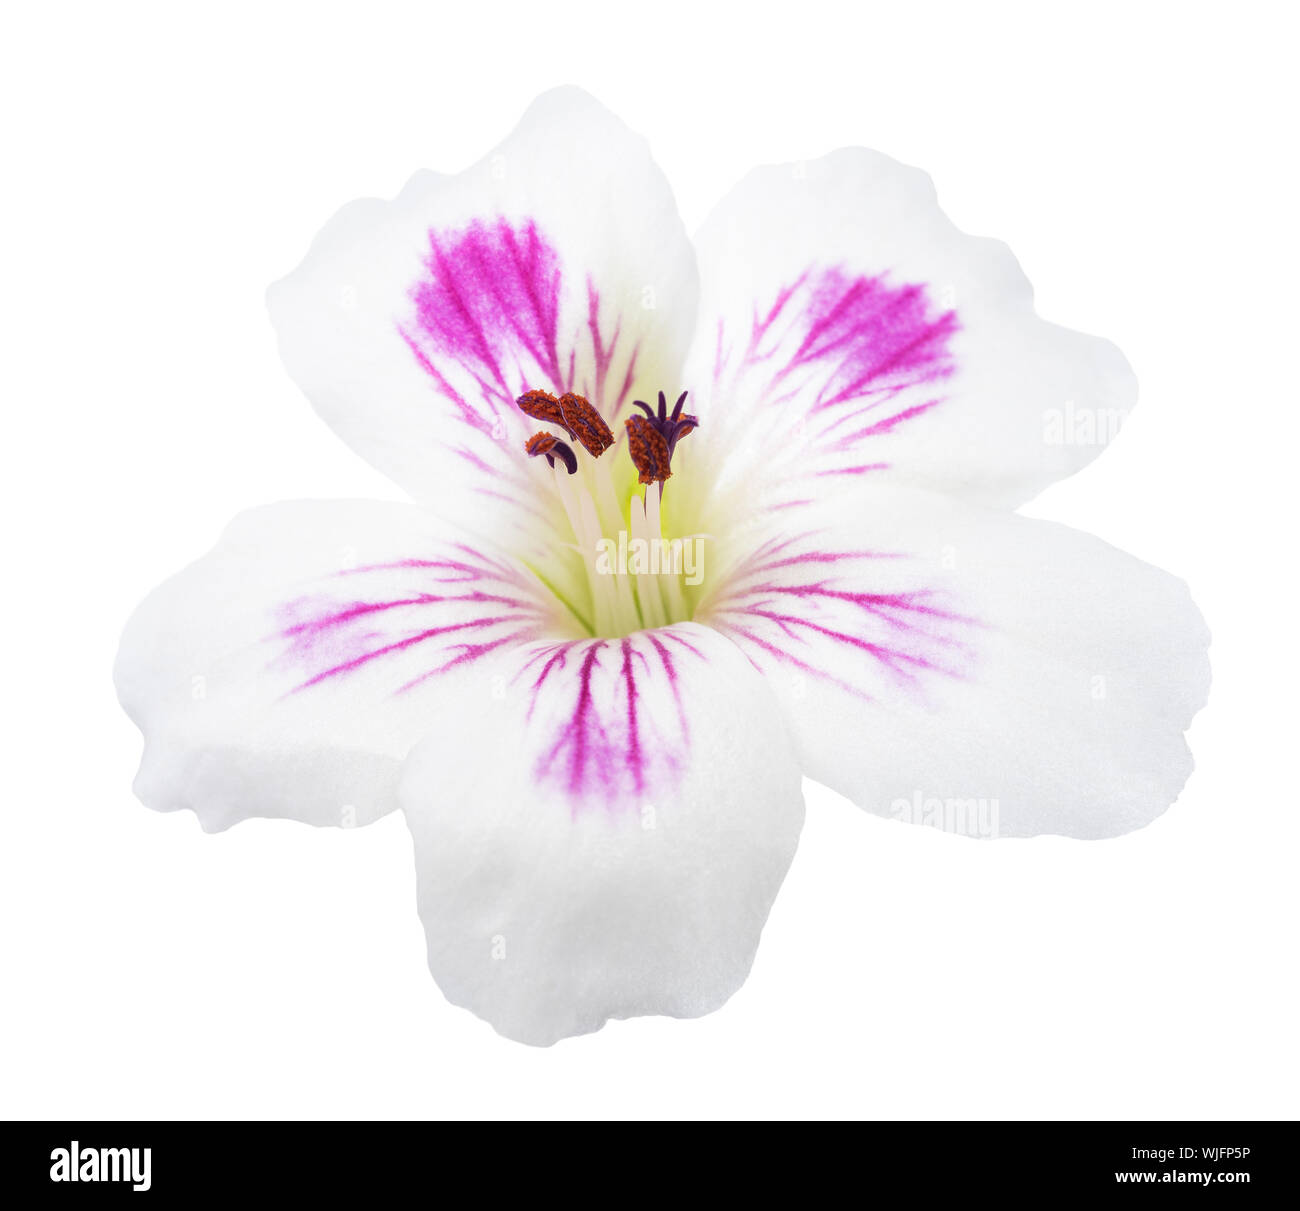 pelargonium flower  isolated on white background Stock Photo